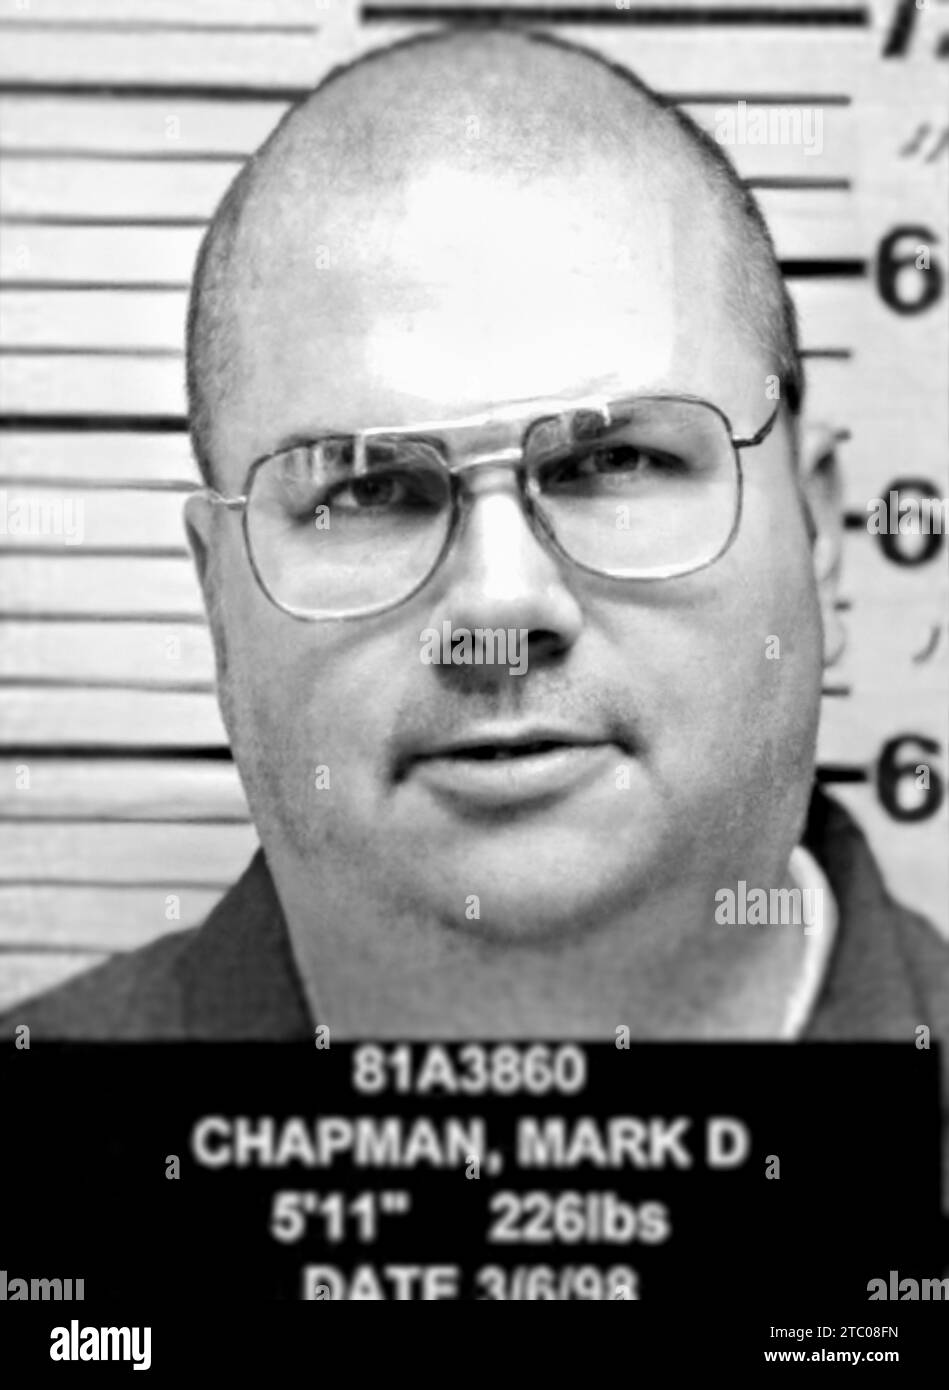 1998 , 6 mars , USA : le tueur américain DAVID MARK CHAPMAN ( né le 10 mai 1955 ) . Police prison 's mug shot du kiler de l'ex- Beatles JOHN LENNON ( 1940 - 1980 ), tué whitout une raison le jour 8 décembre 1980 . Photographe inconnu de prison . - Portrait - portrait - MUG-shot de police - MUG-SHOT - MEURTRIER - CRIME - TUEUR - CRONACA NERA - MUSIQUE - MUSICA - PRIGIONE - PRISON --- ARCHIVIO GBB Banque D'Images